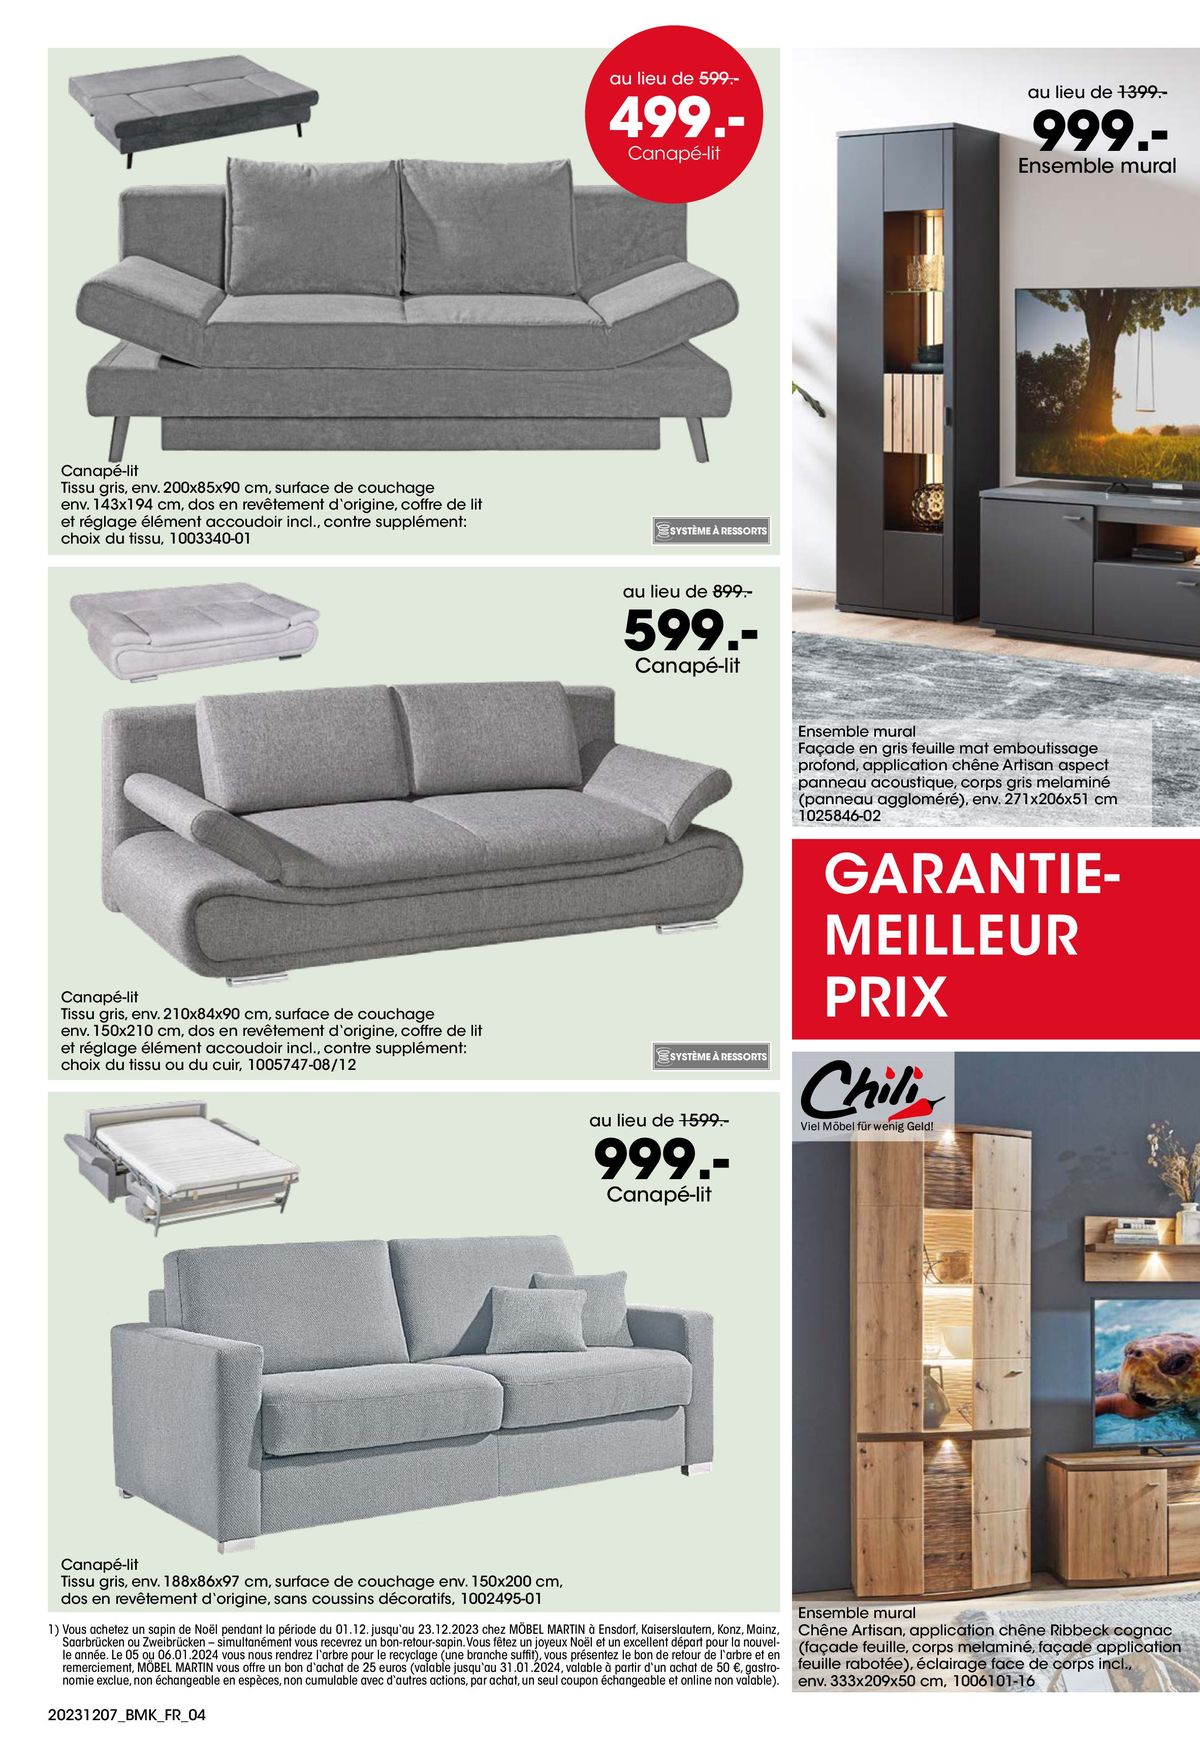 Catalogue Votre nouveau chez-vous avec GARANTIE-MEILLEUR PRIX, page 00004